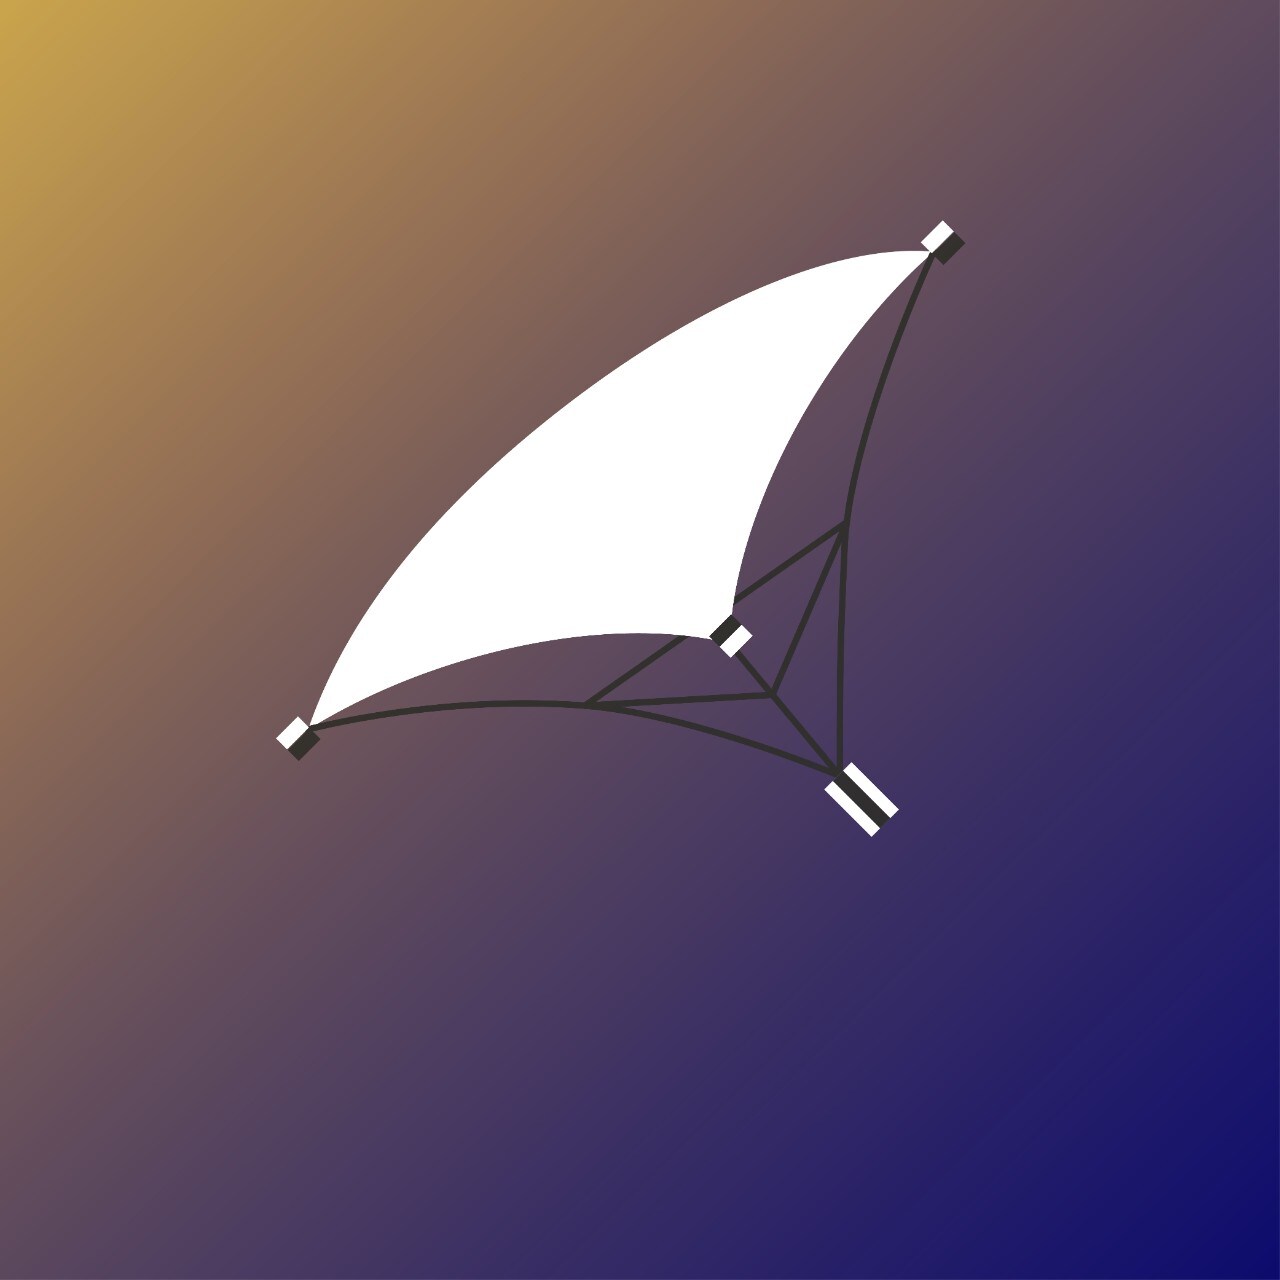 Sail probe concept